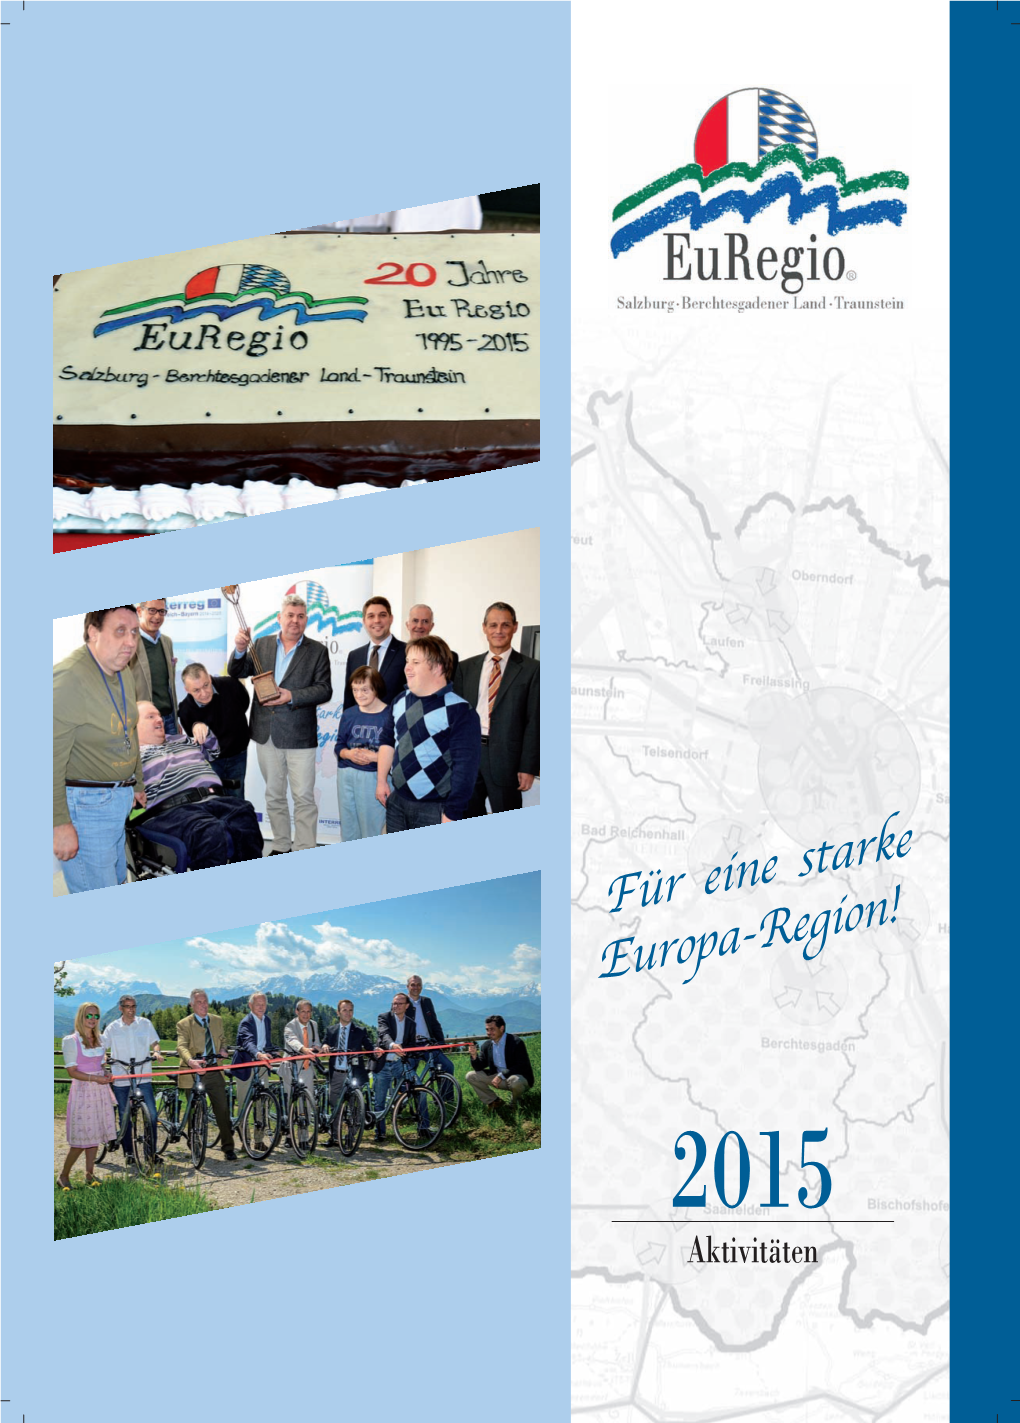 Für Eine Starke Europa-Region! 2015 Aktivitäten Euregio Salzburg - Berchtesgadenereuregio Land - Traunstein Salzburg - Berchtesgadener Land - Traunstein